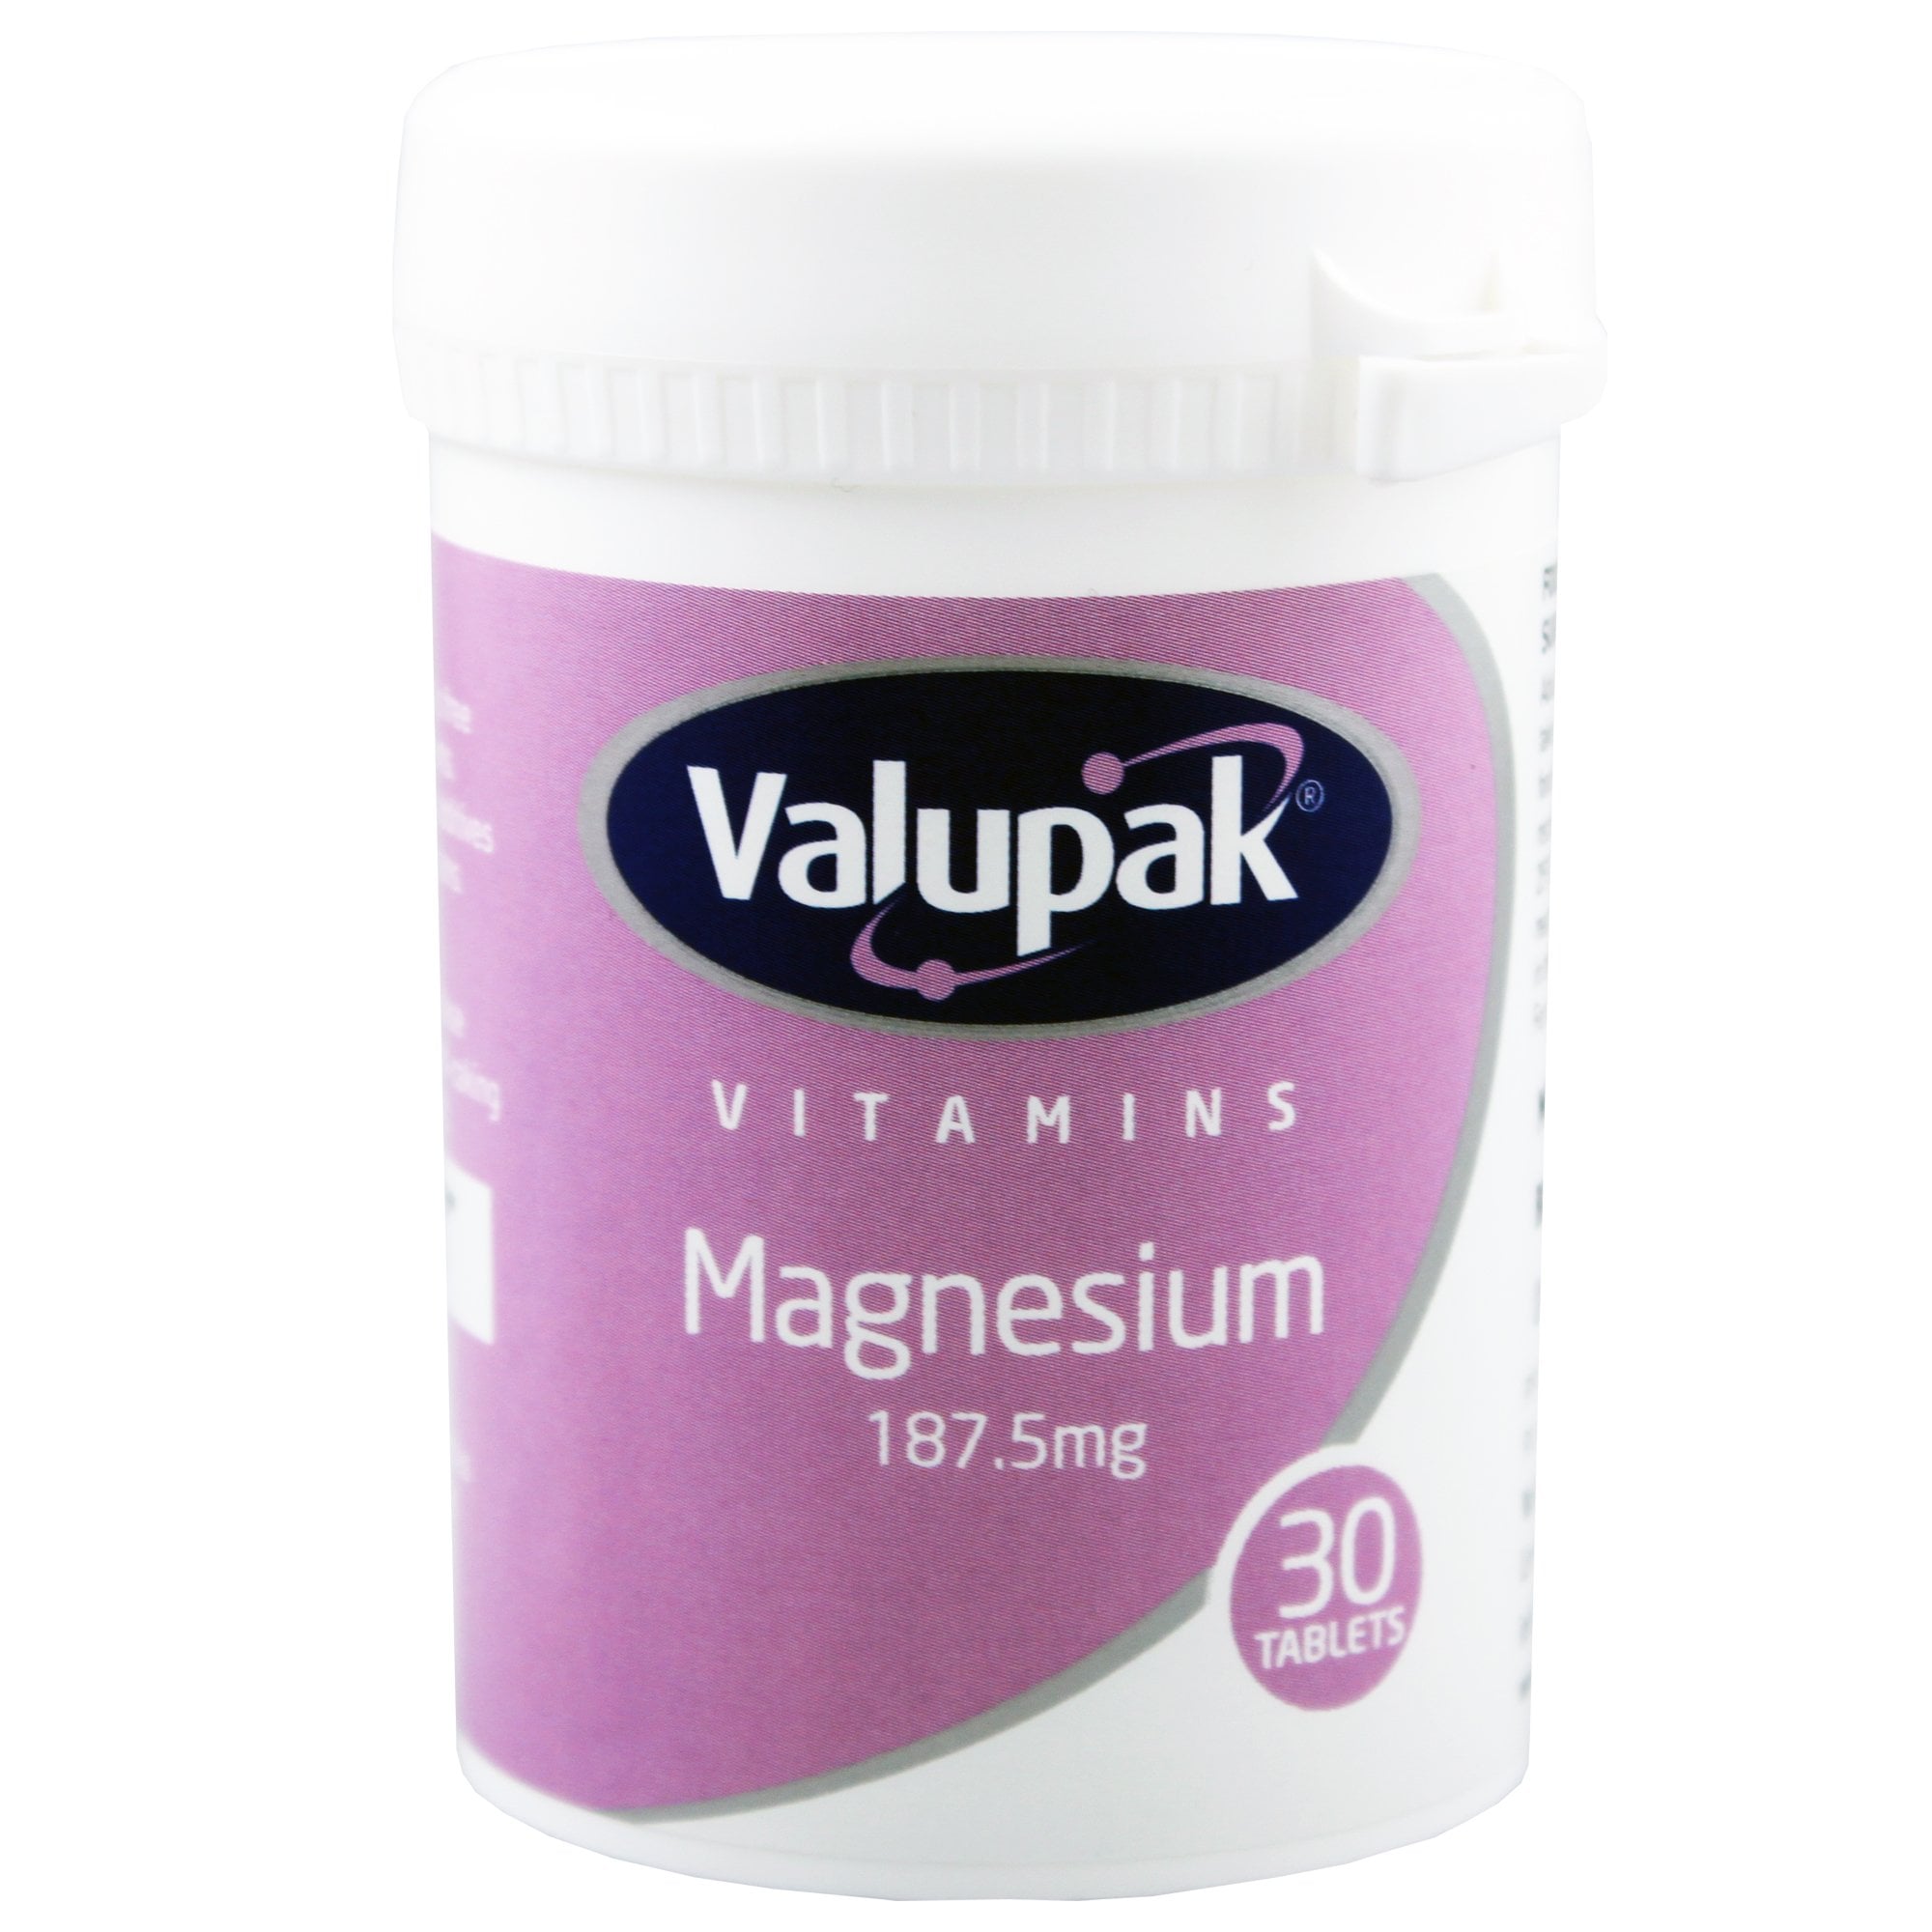 Valupak magnesium tablets